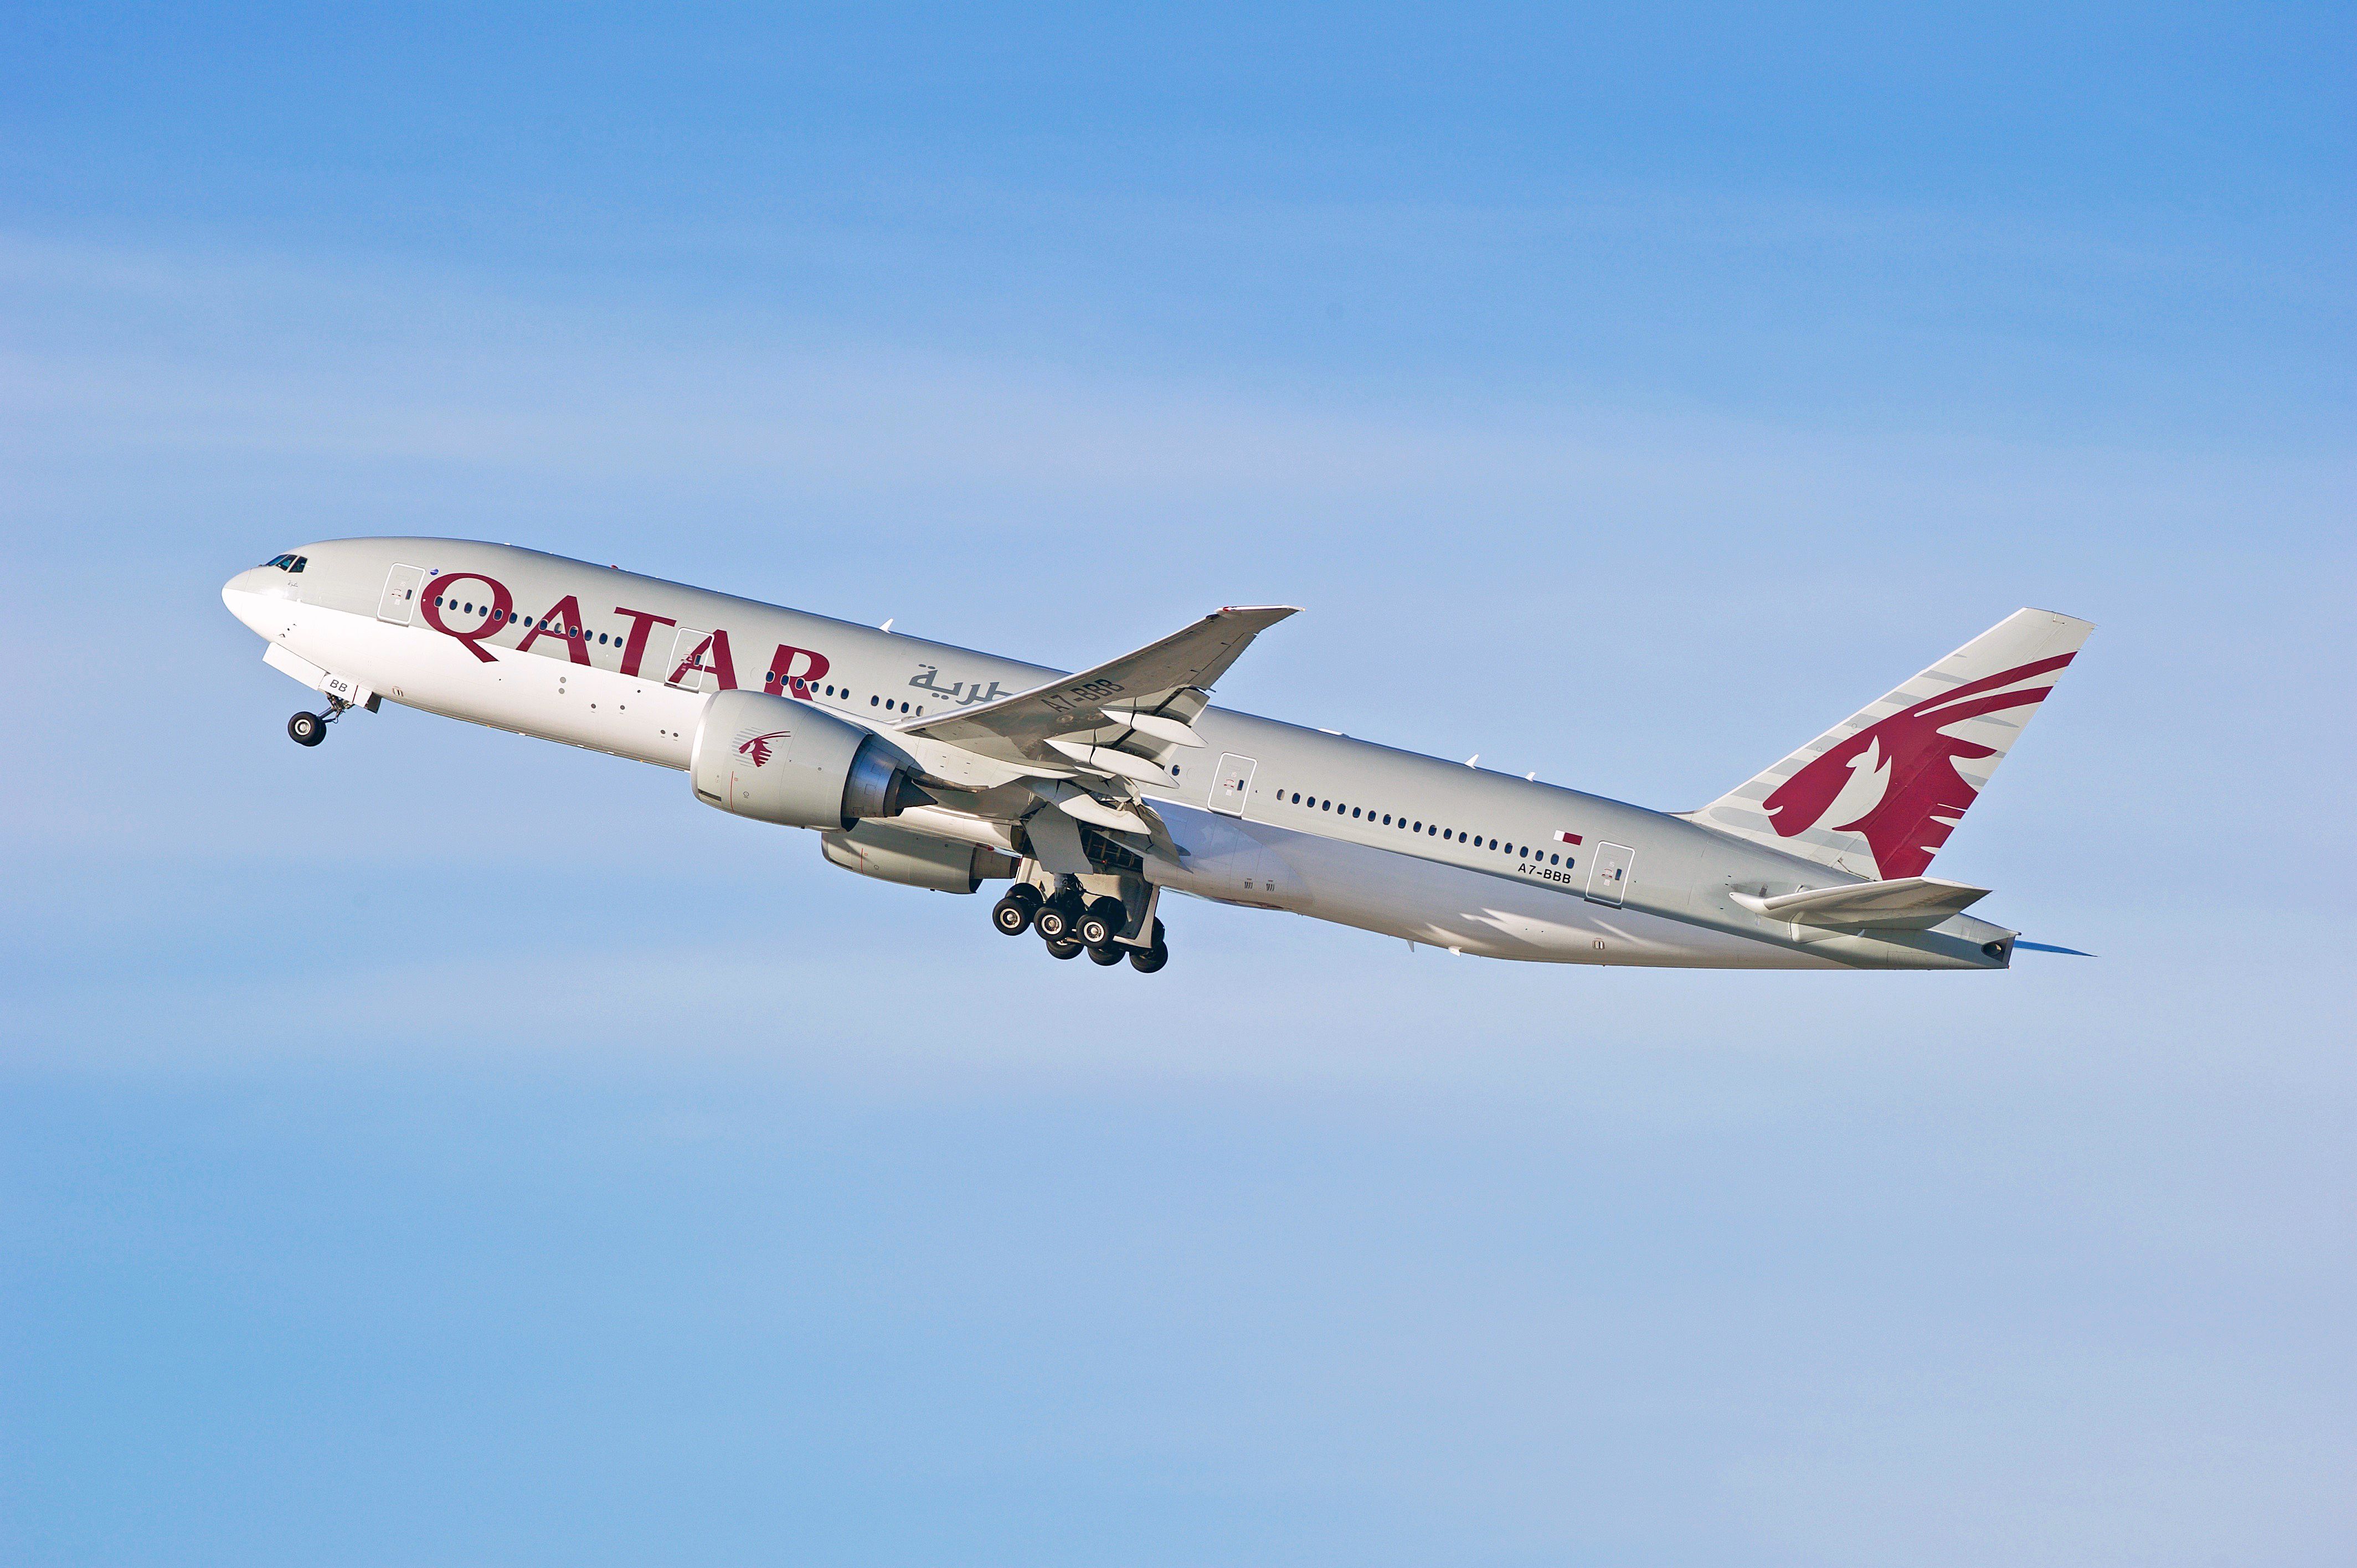 A Qatar Airways Boeing 777-200LR flying in the sky.